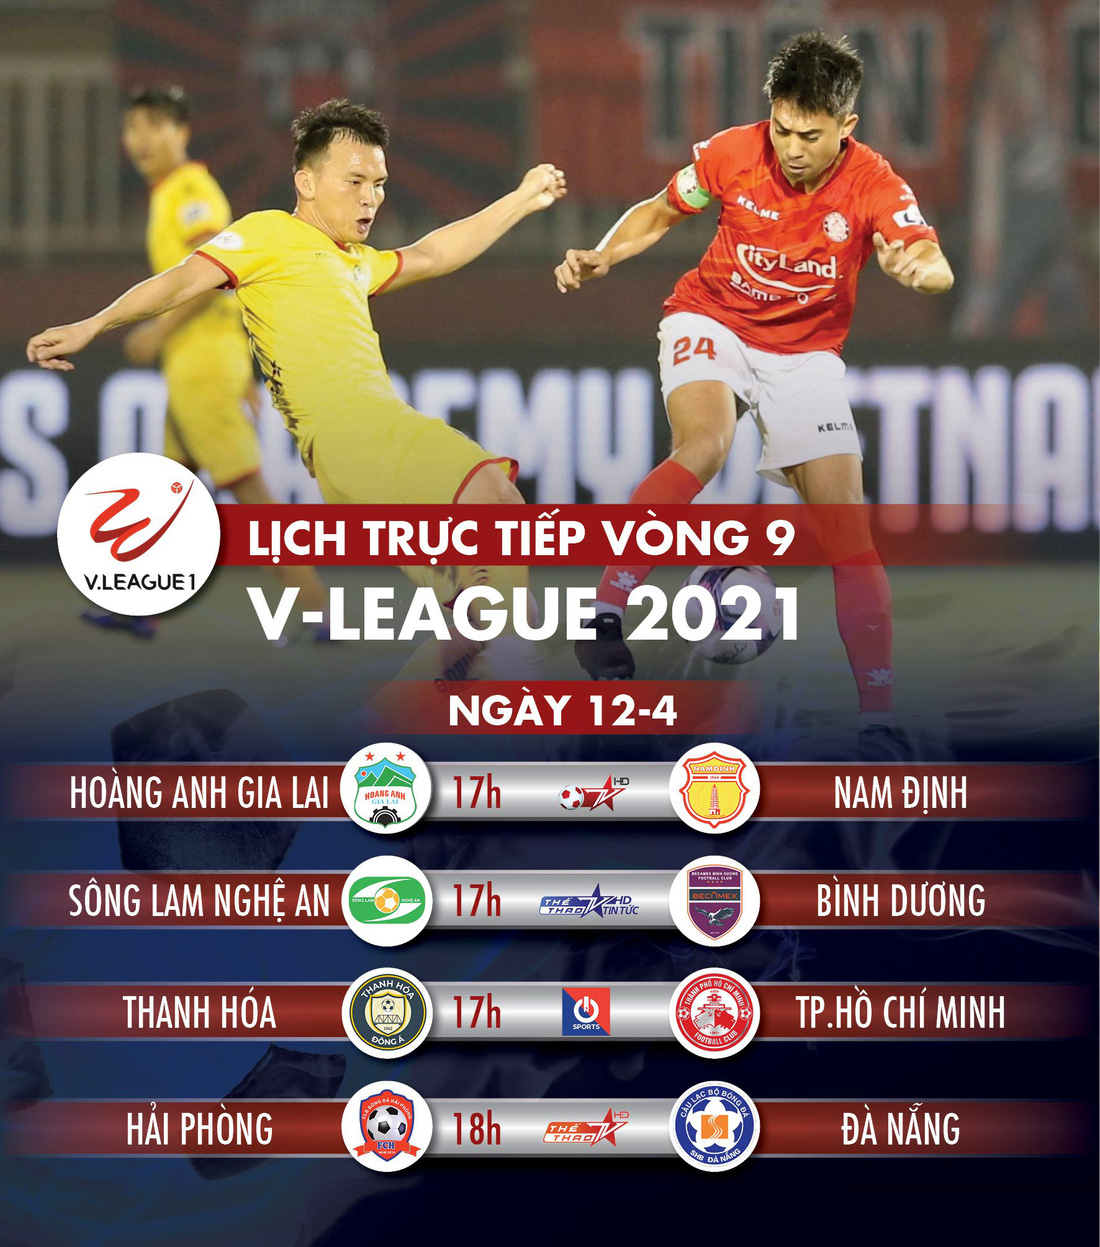 Lịch trực tiếp vòng 9 V-League: Hoàng Anh Gia Lai gặp Nam Định - Ảnh 1.